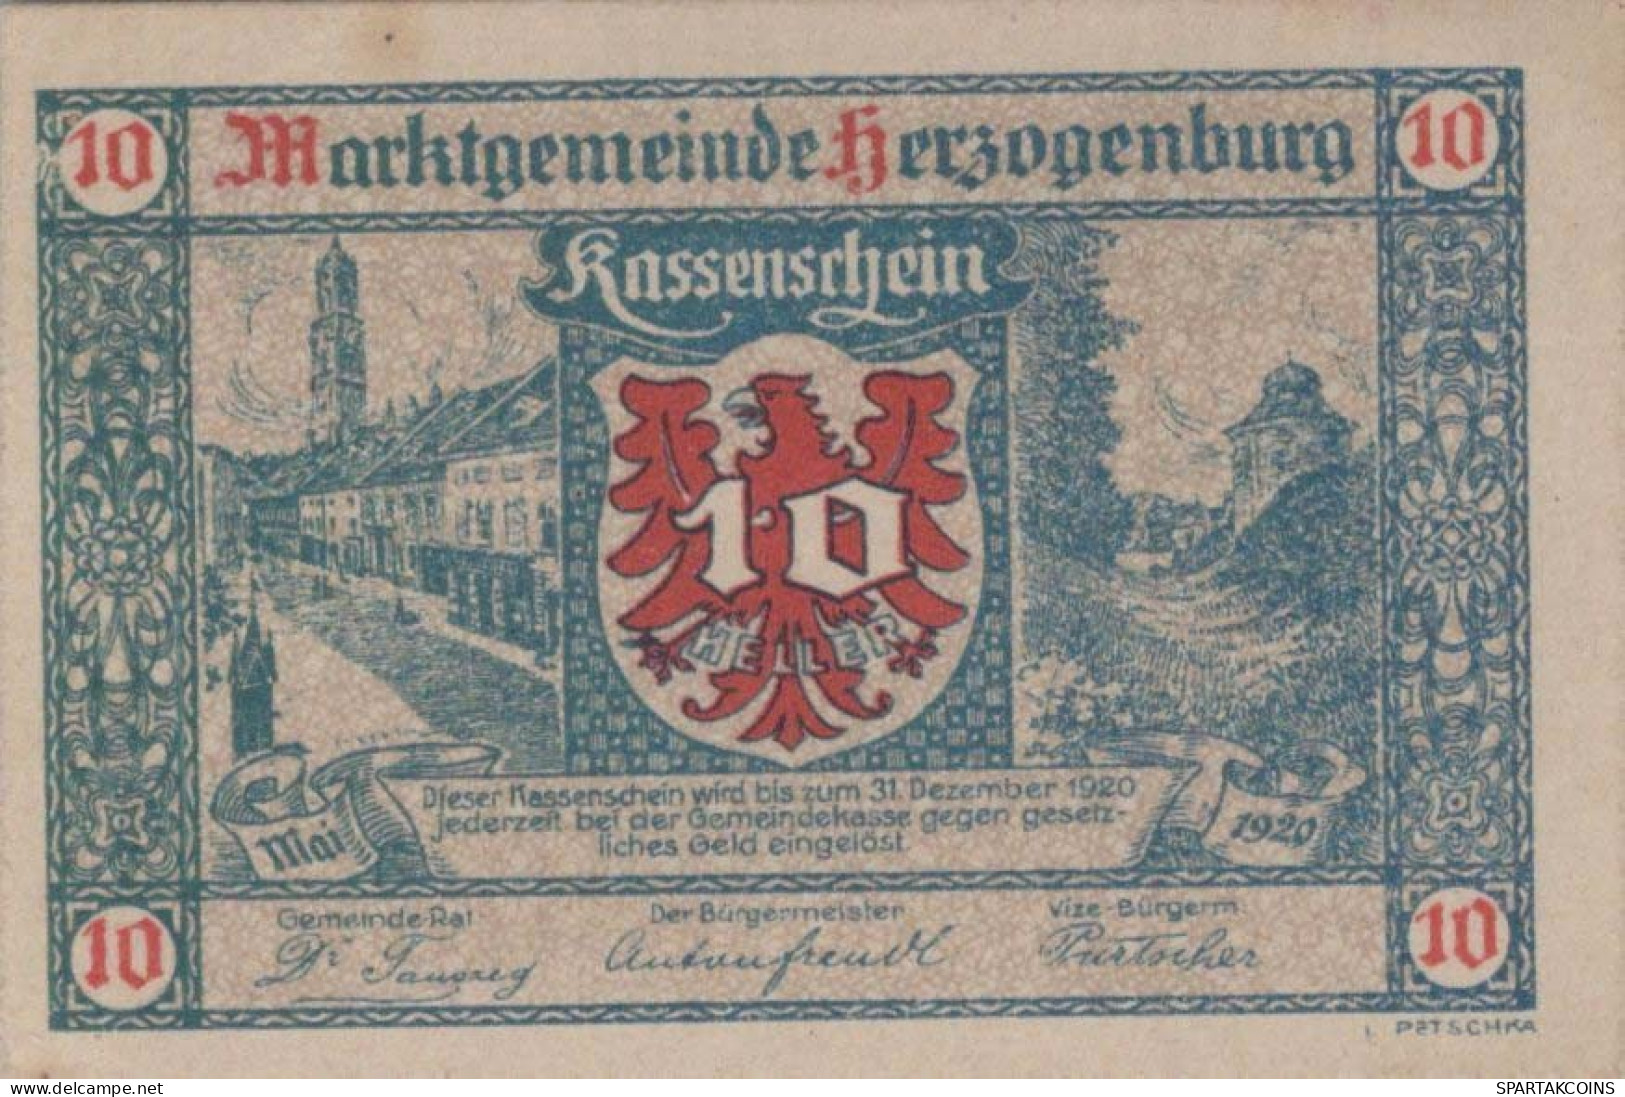 10 HELLER 1920 Stadt HERZOGENBURG Niedrigeren Österreich Notgeld #PD598 - [11] Emissions Locales